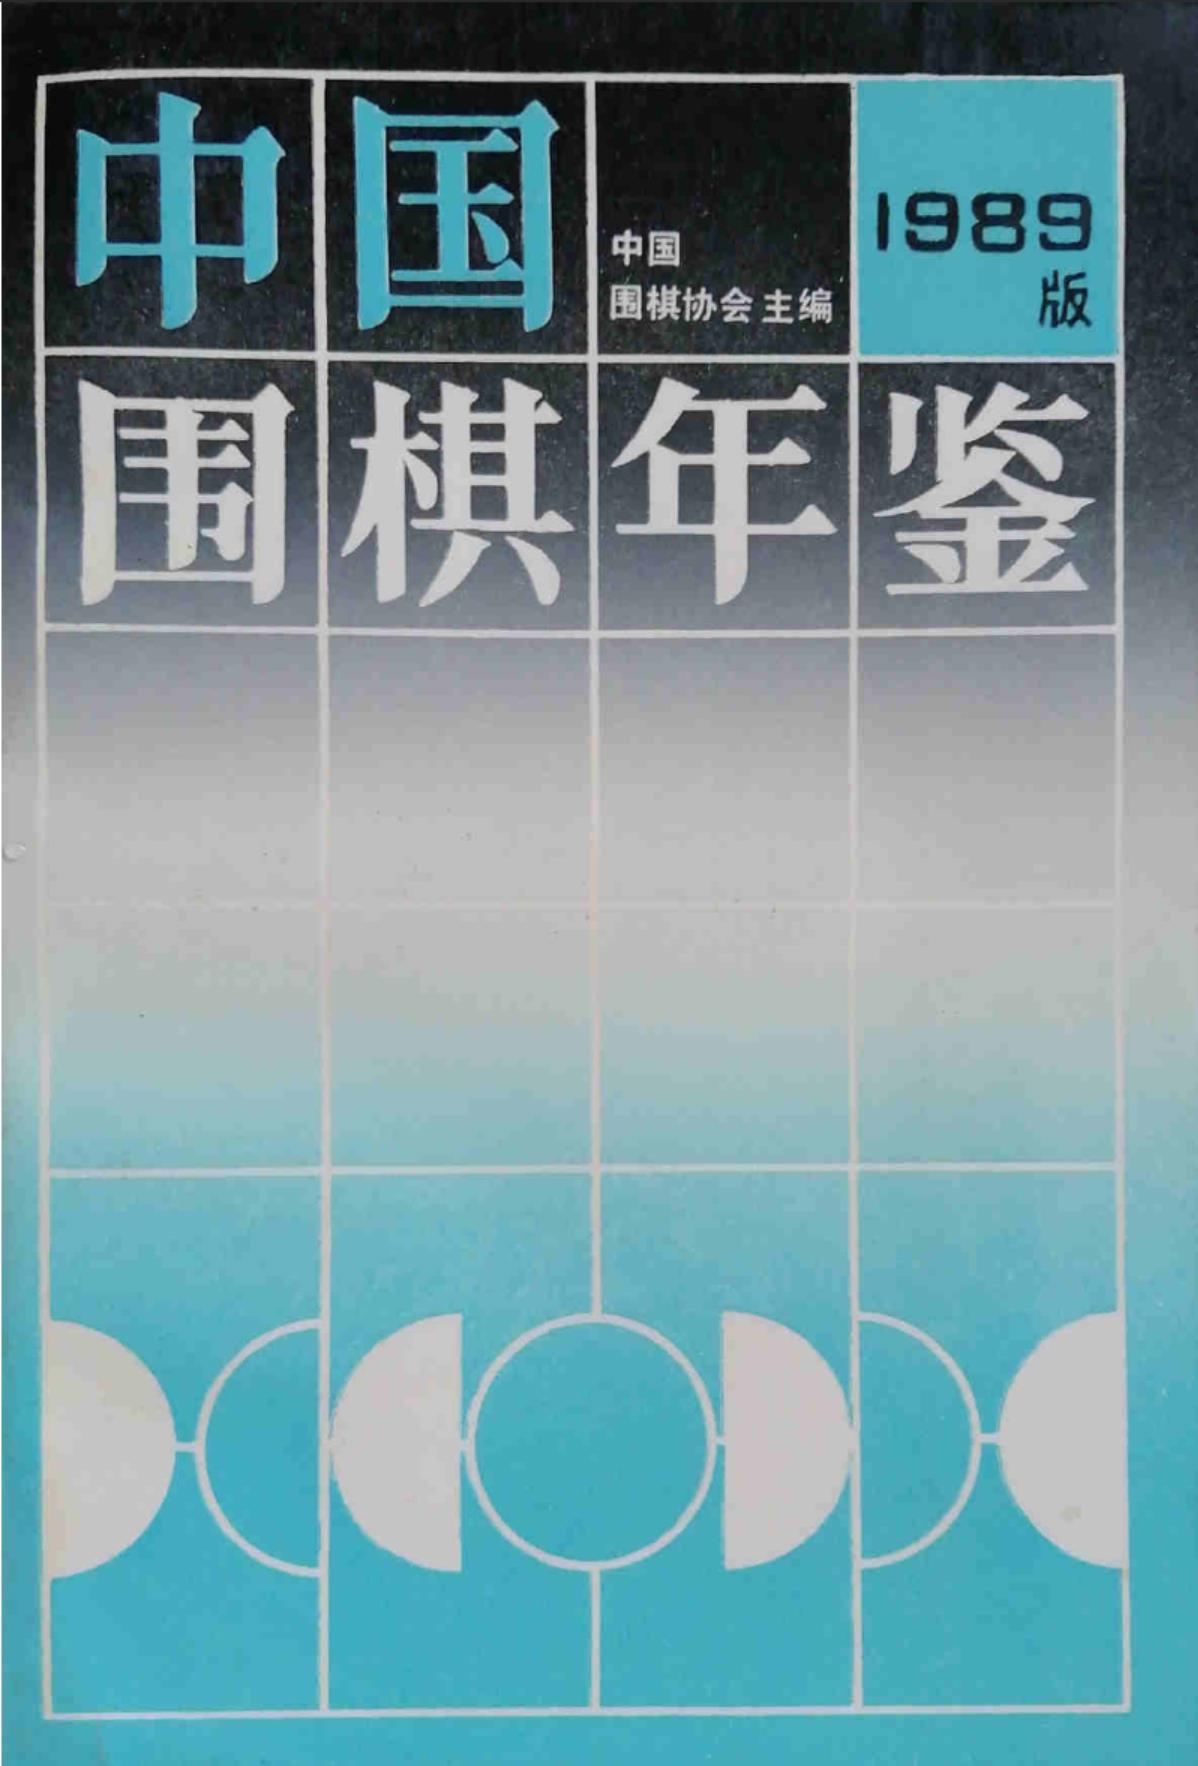 《中国围棋年鉴1989》